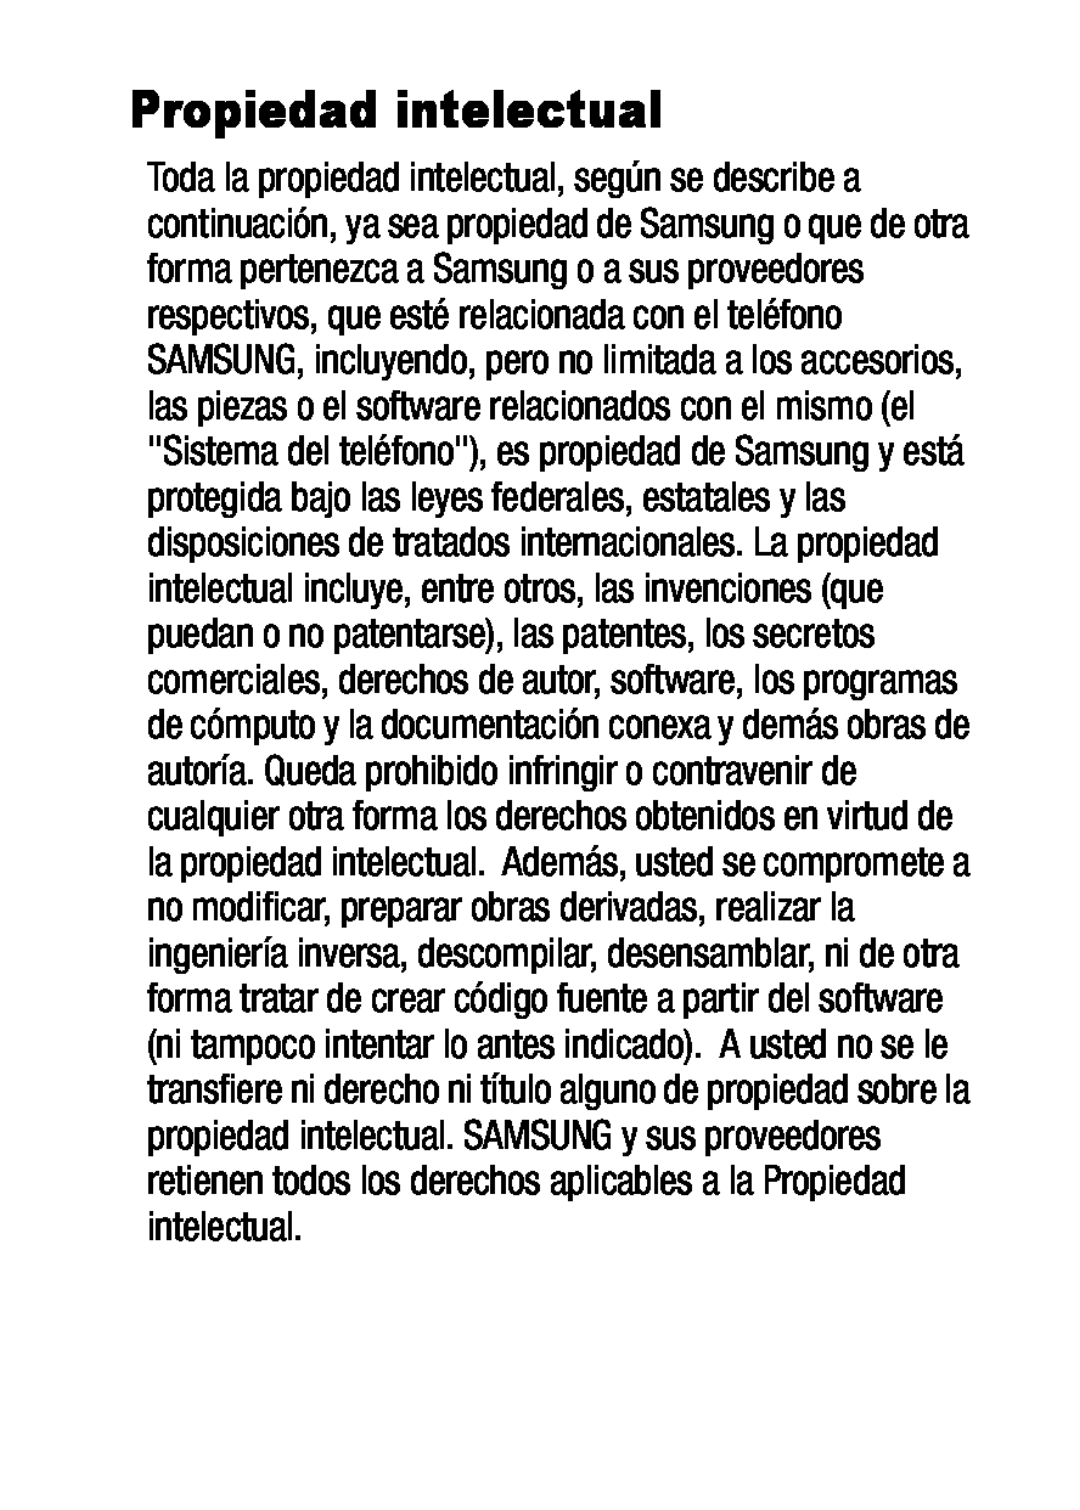 Propiedad intelectual Galaxy S5 Metro PCS